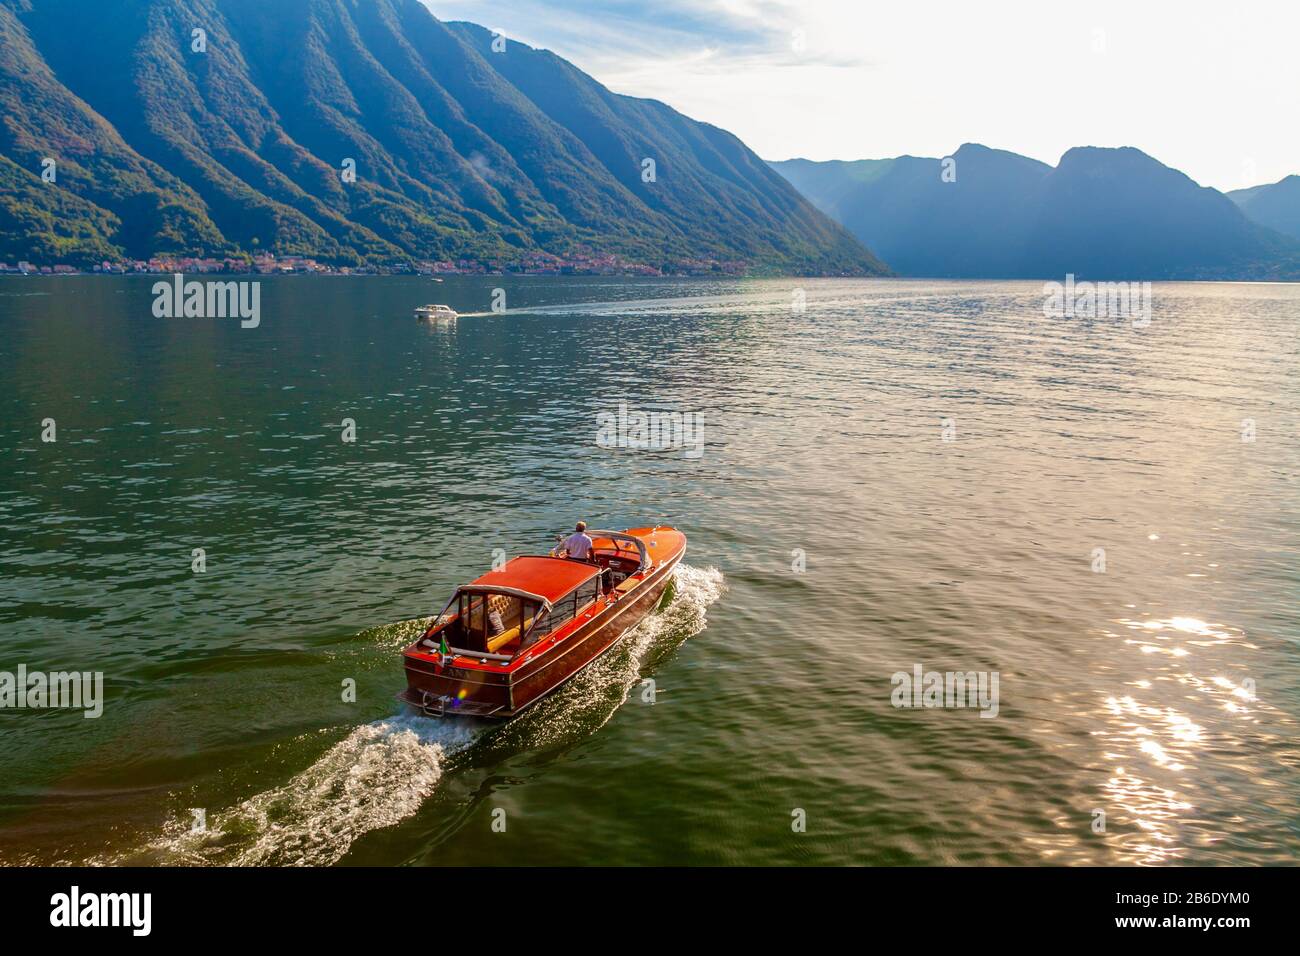 Lenno, province de Côme, Italie - 14 septembre 2013 - un bateau vintage et élégant sur le lac de Côme au coucher du soleil Banque D'Images